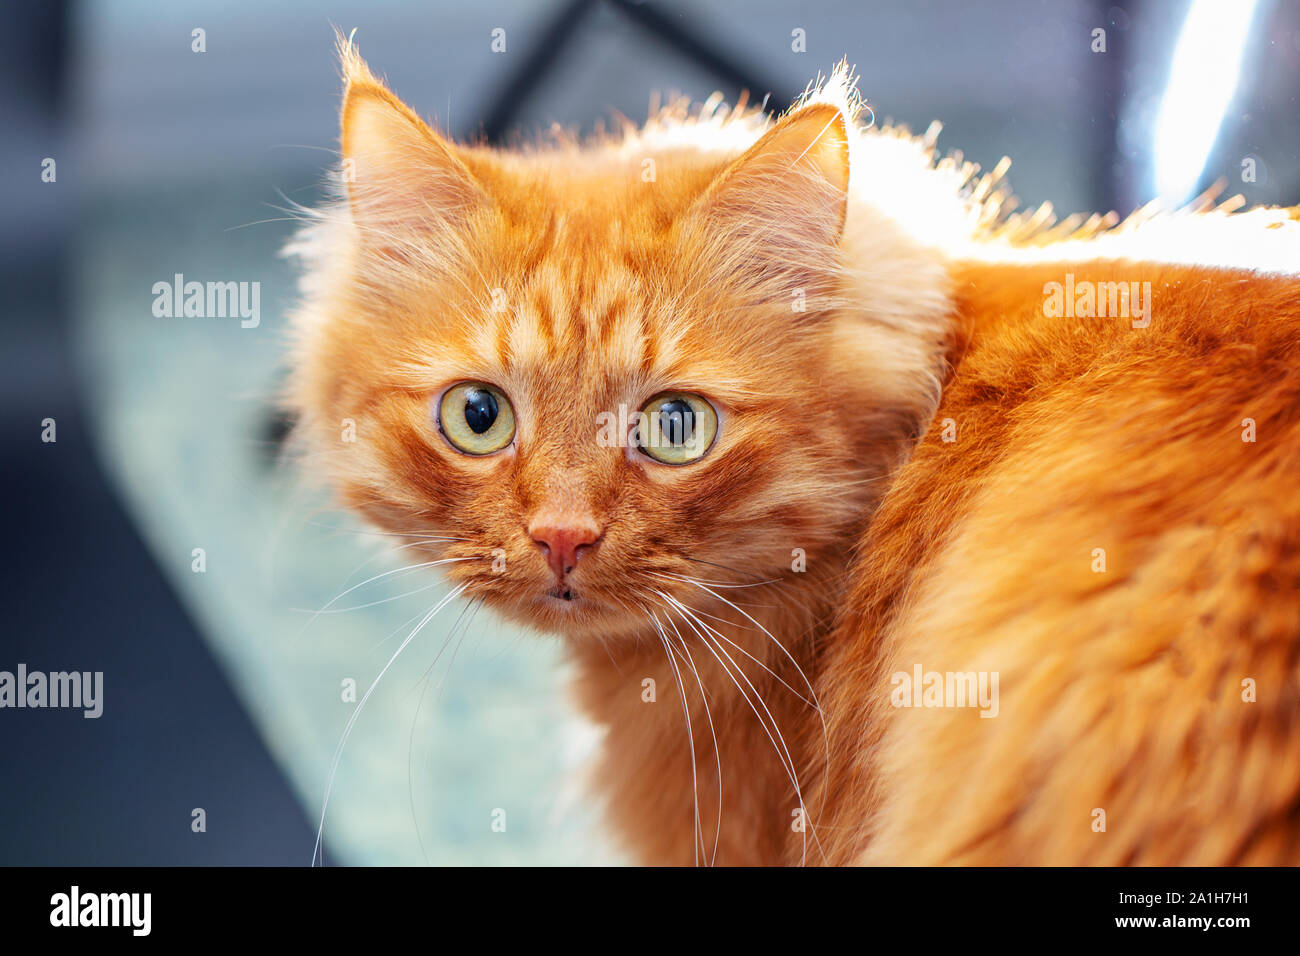 Ritratto di un soffice gatto rosso su uno sfondo sfocato. Museruola sul lato destro del telaio, il gatto ha girato intorno e guarda in lontananza. Chiudere- Foto Stock